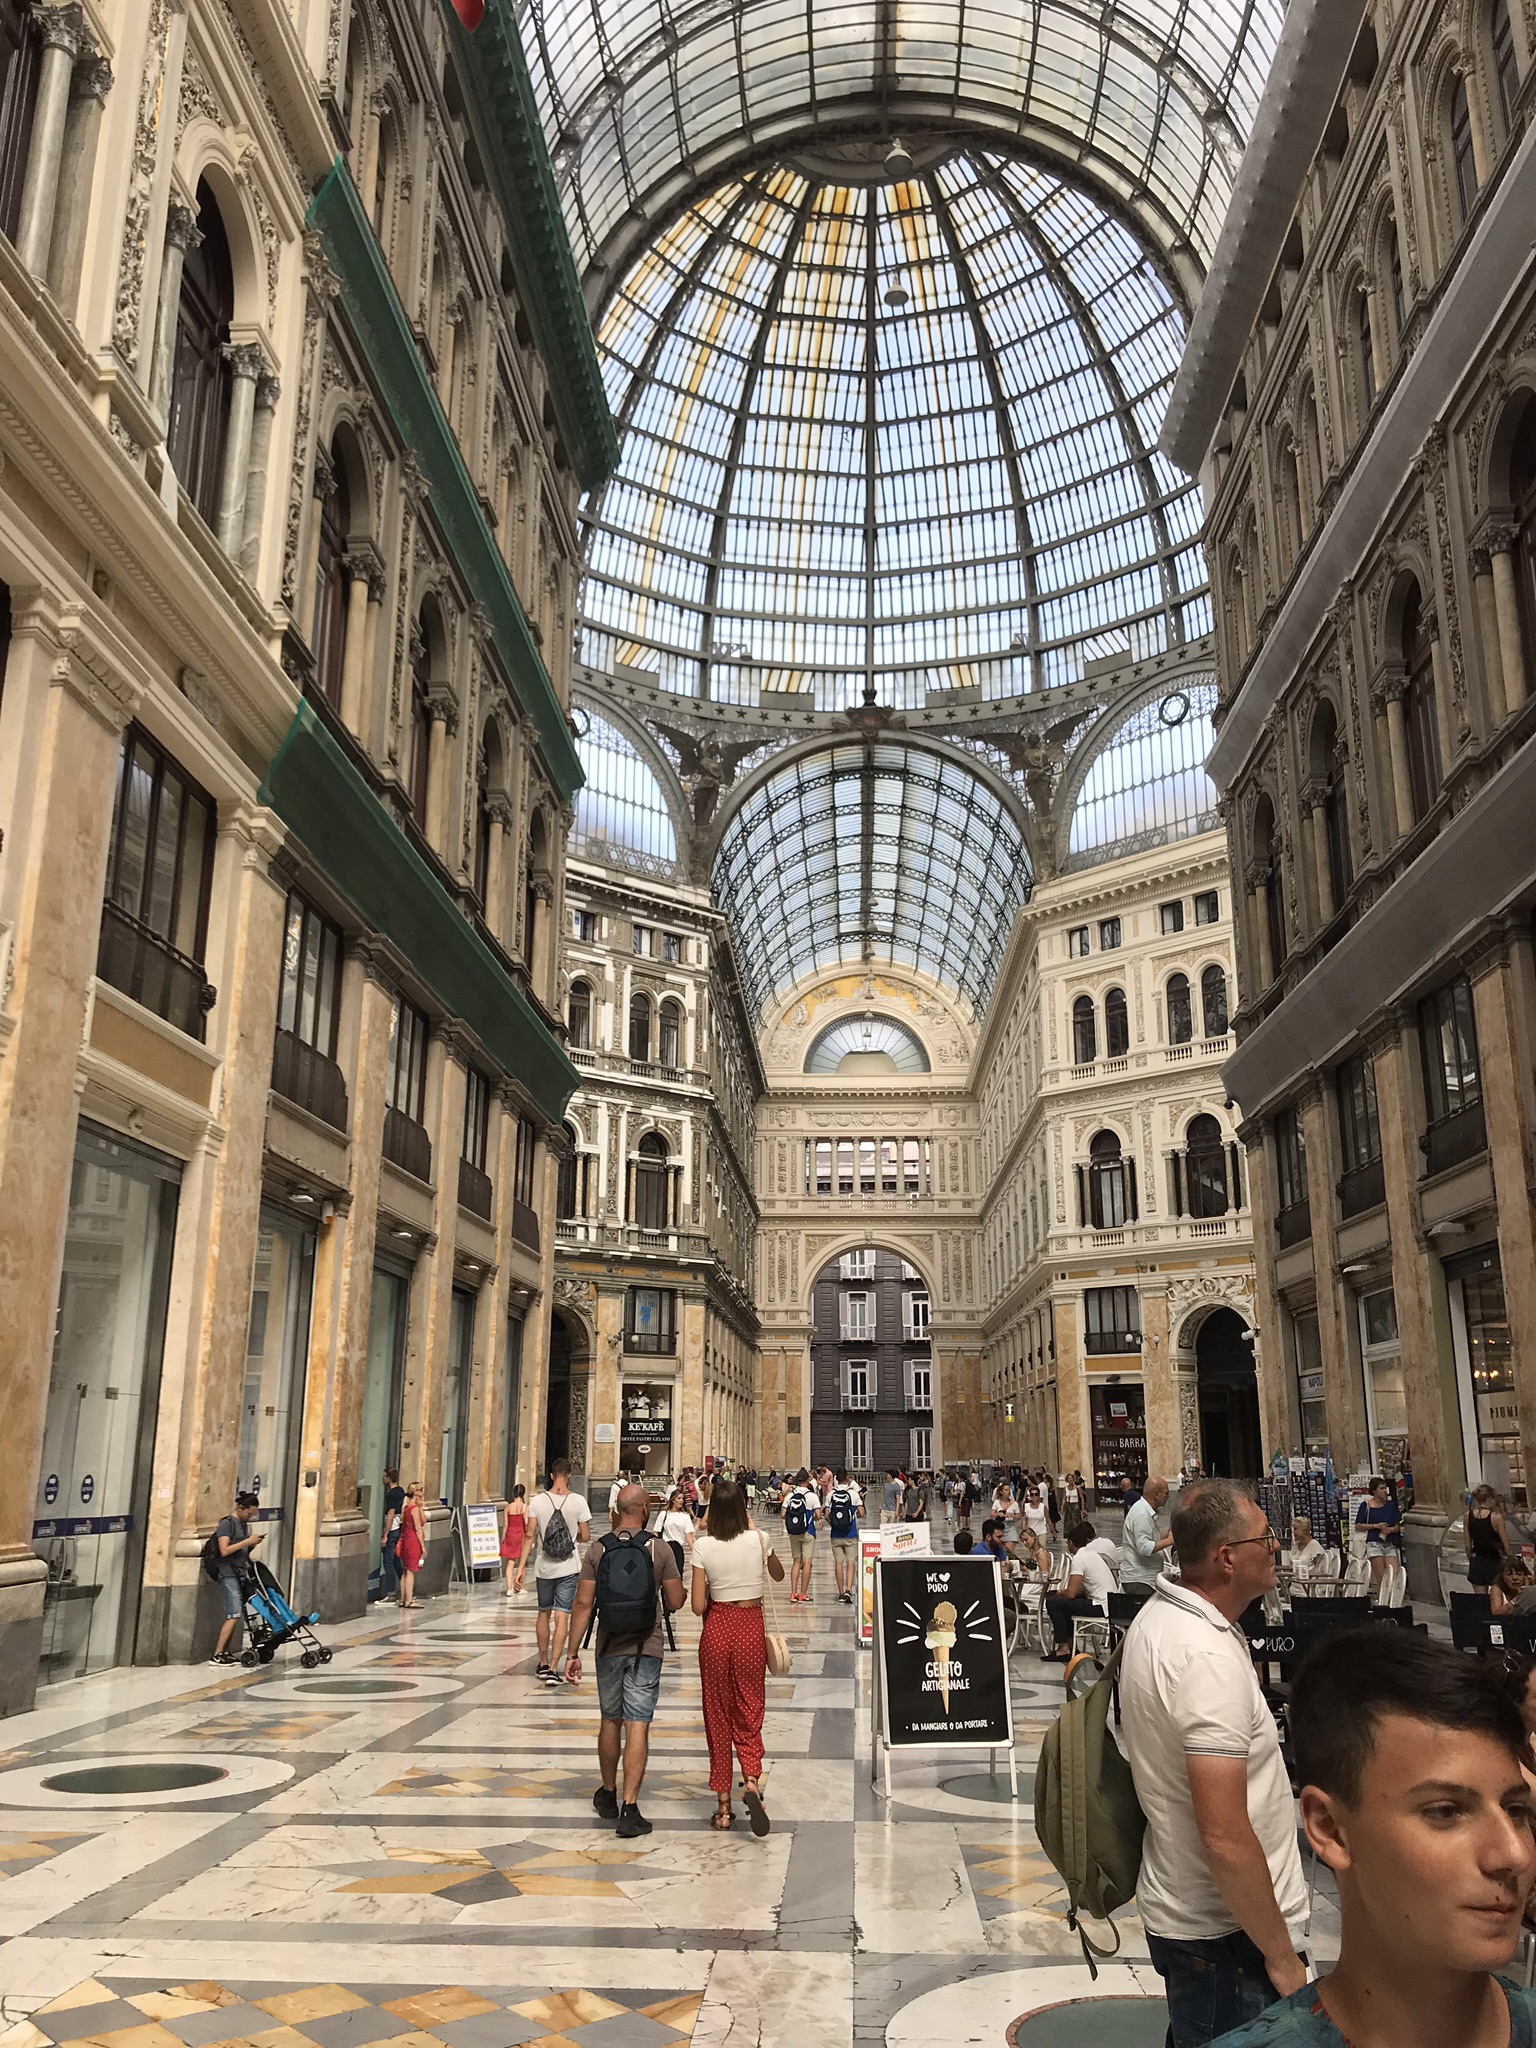 A Galleria Umberto egy passzázs, amelyet a milánói Galleria Vittorio Emanuele II. mintájára építettek 1887 és 1891 között.